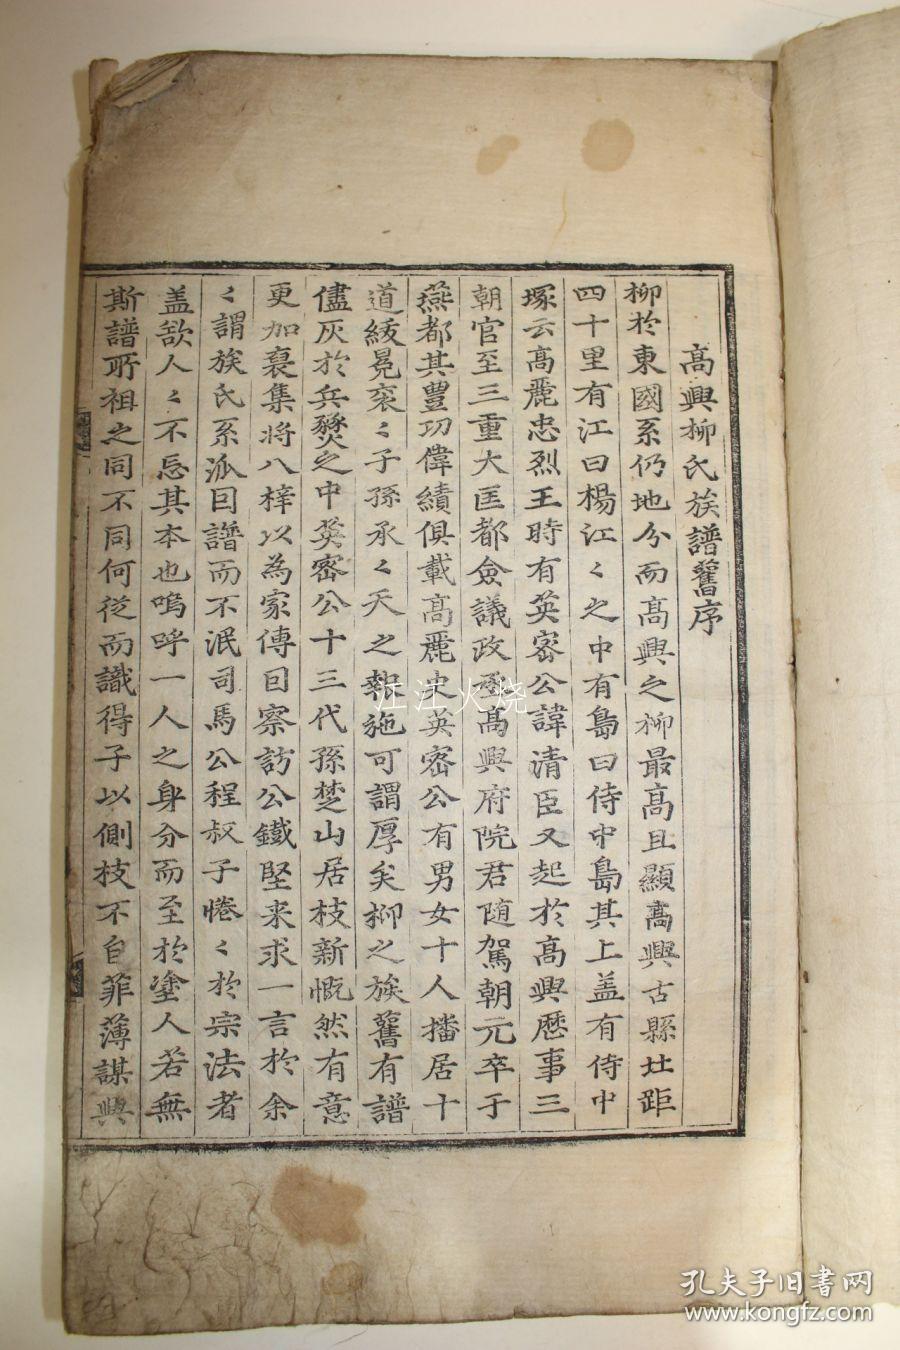 1698年(崇祯纪元后71年戊壬年) 木刻本 《高兴柳氏族谱》卷1 1册 初刊本